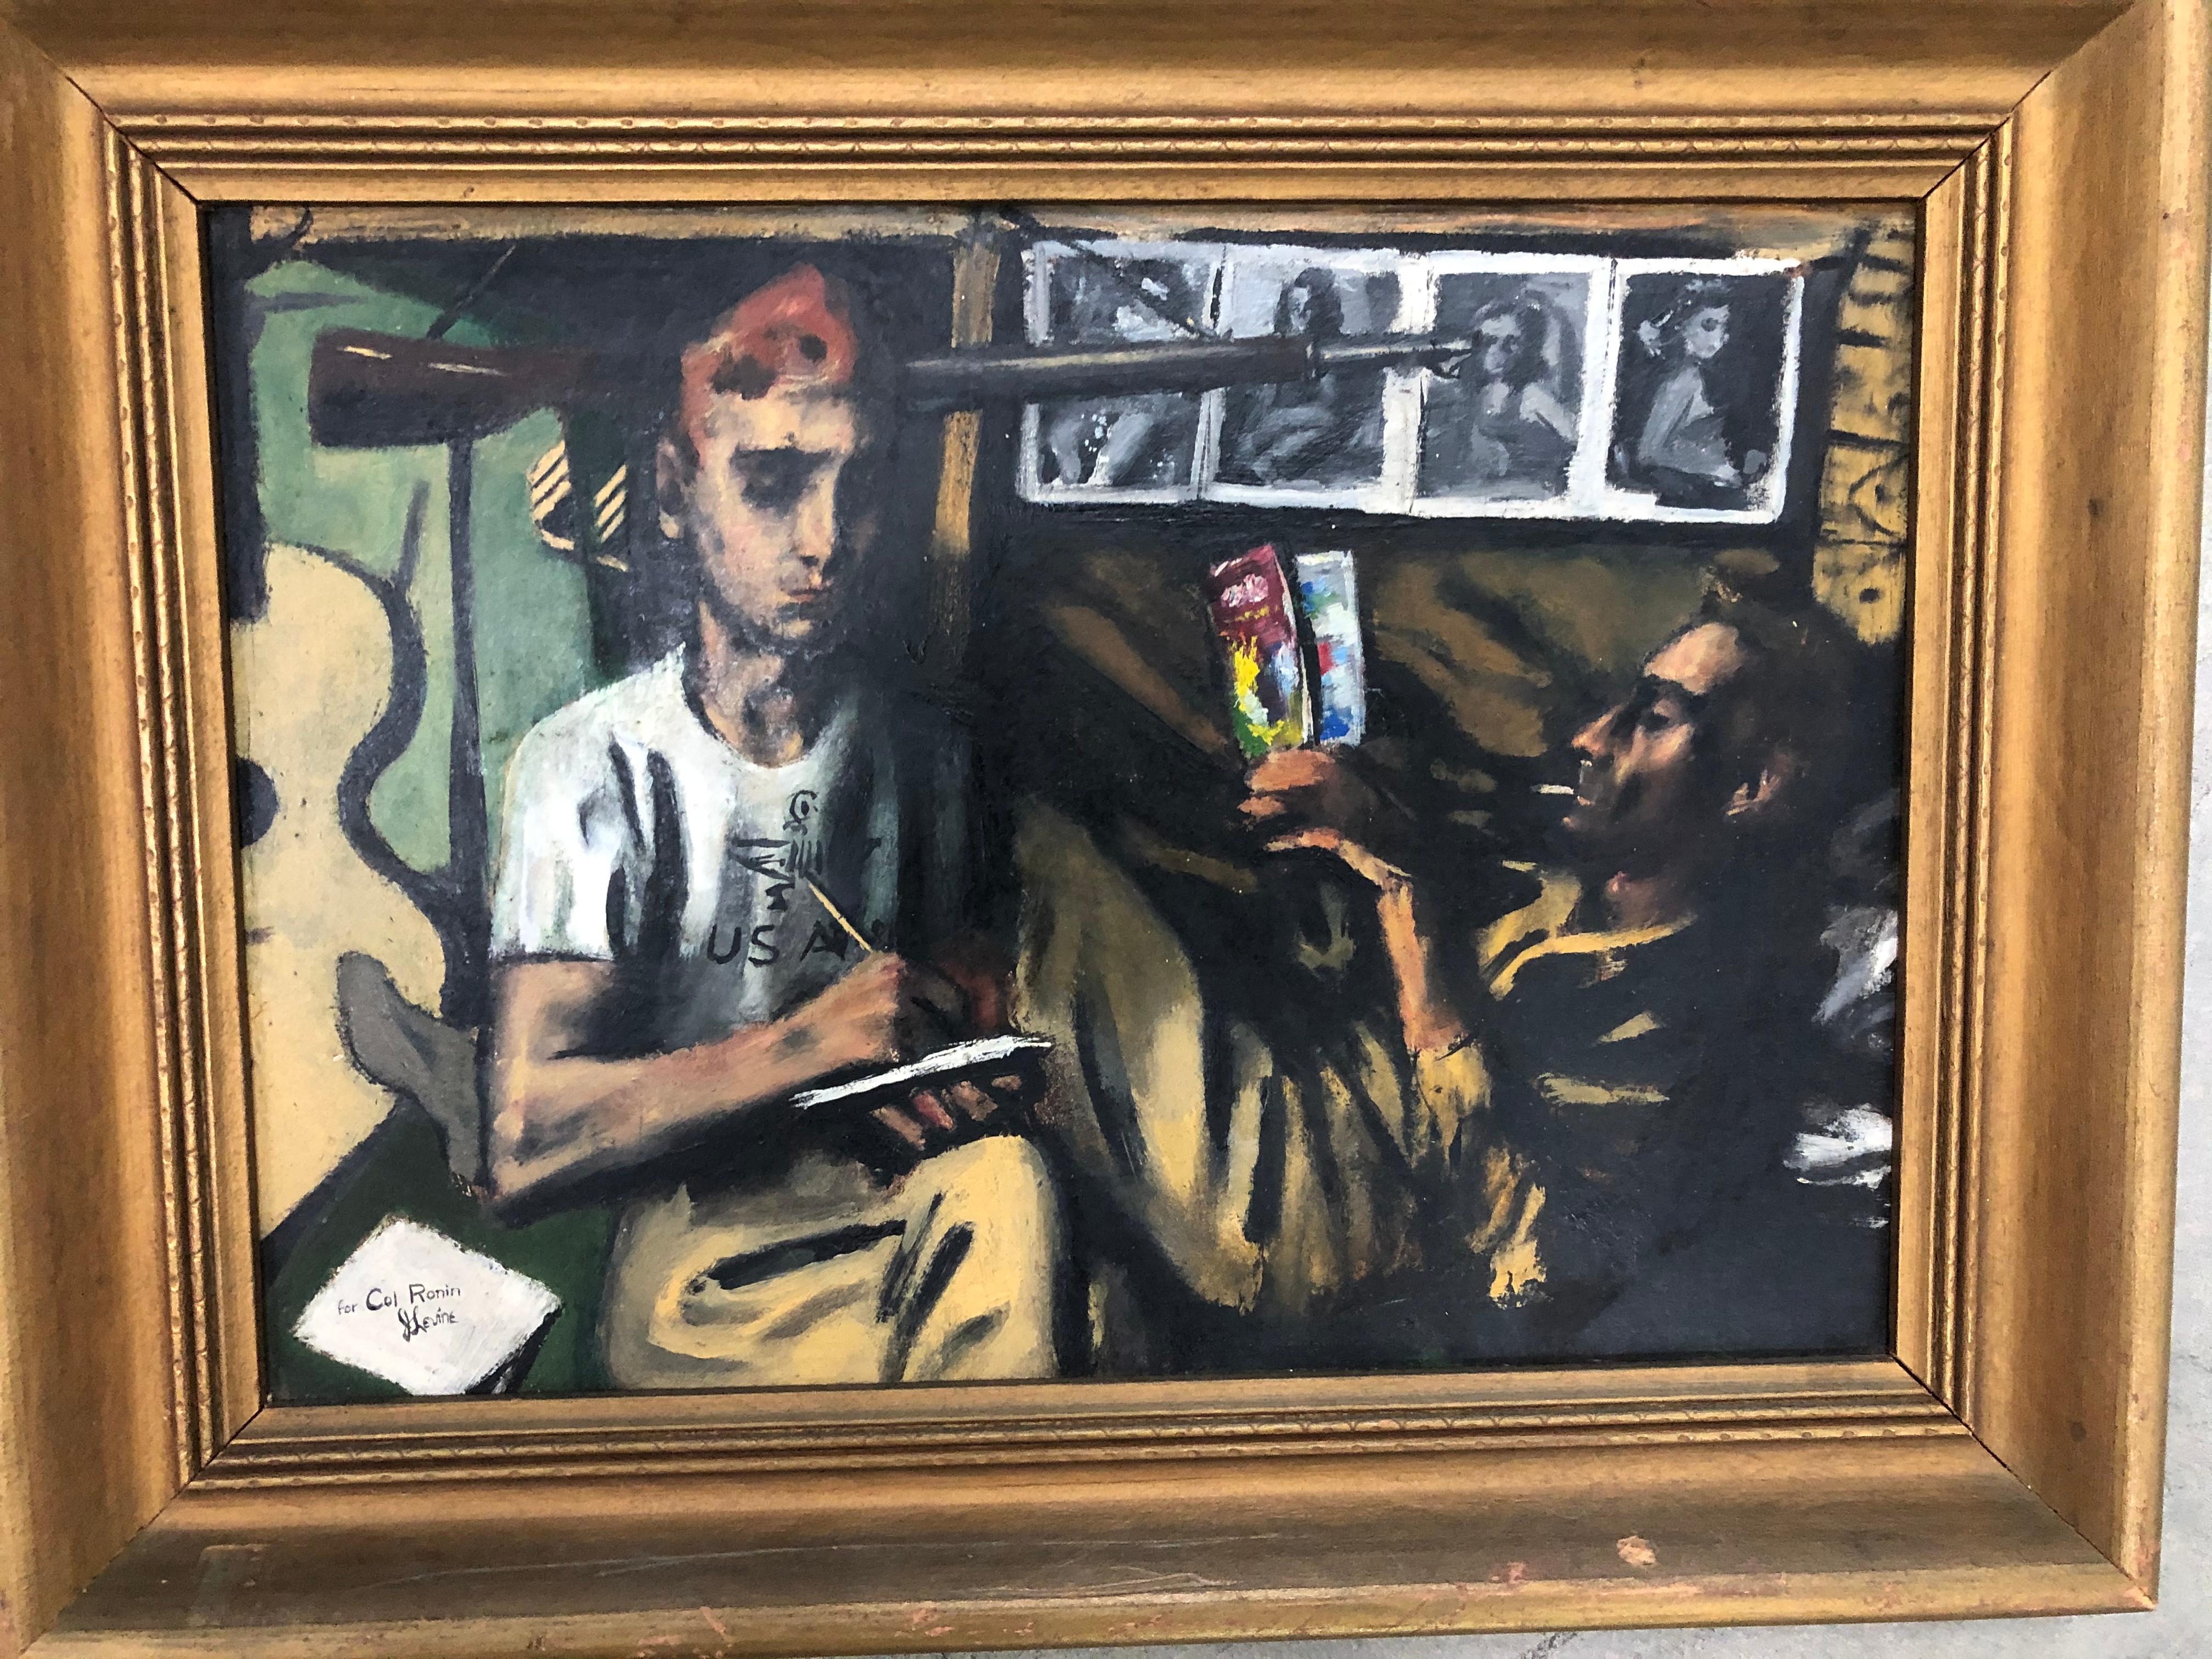 Jack Levine: 1915-2010. Gut gelisteter amerikanischer Maler des sozialen Realismus mit Auktionsergebnissen von über 220.000 $. Dieses fabelhafte Juwel wurde wahrscheinlich zwischen 1942 und 1945 gemalt, als er während des Zweiten Weltkriegs in der